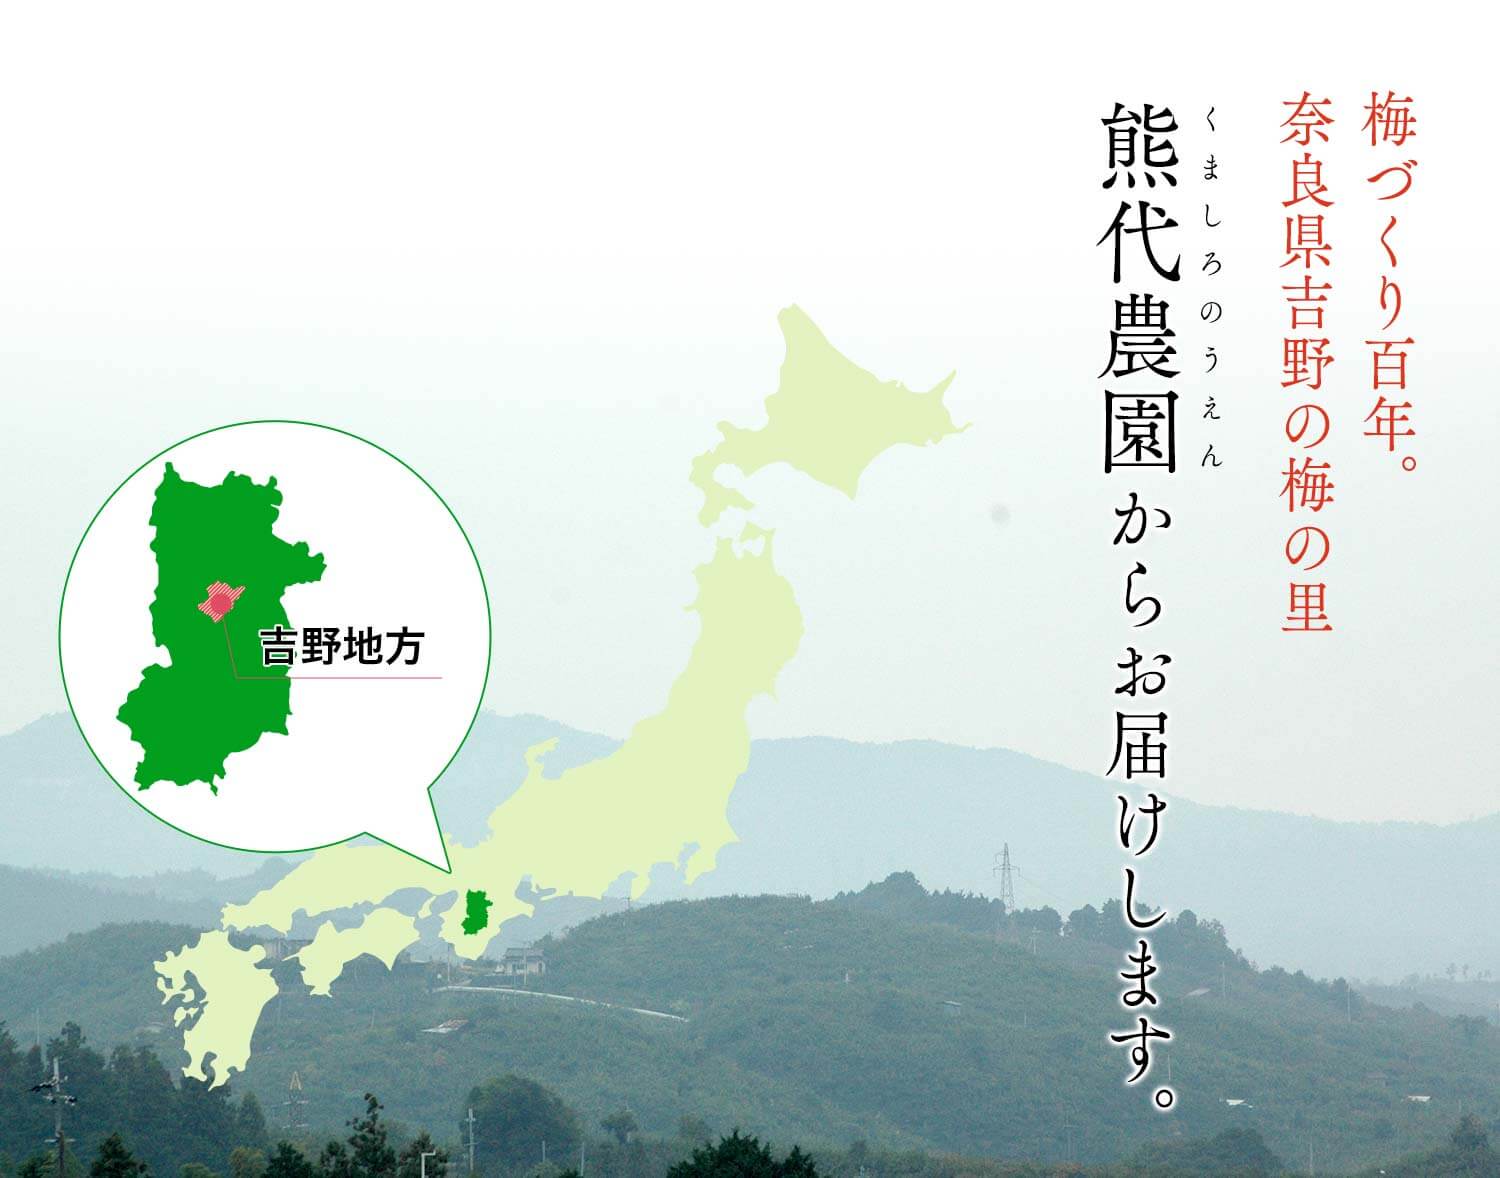 梅づくり百年。奈良県吉野の梅の里、熊代農園からお届けします。